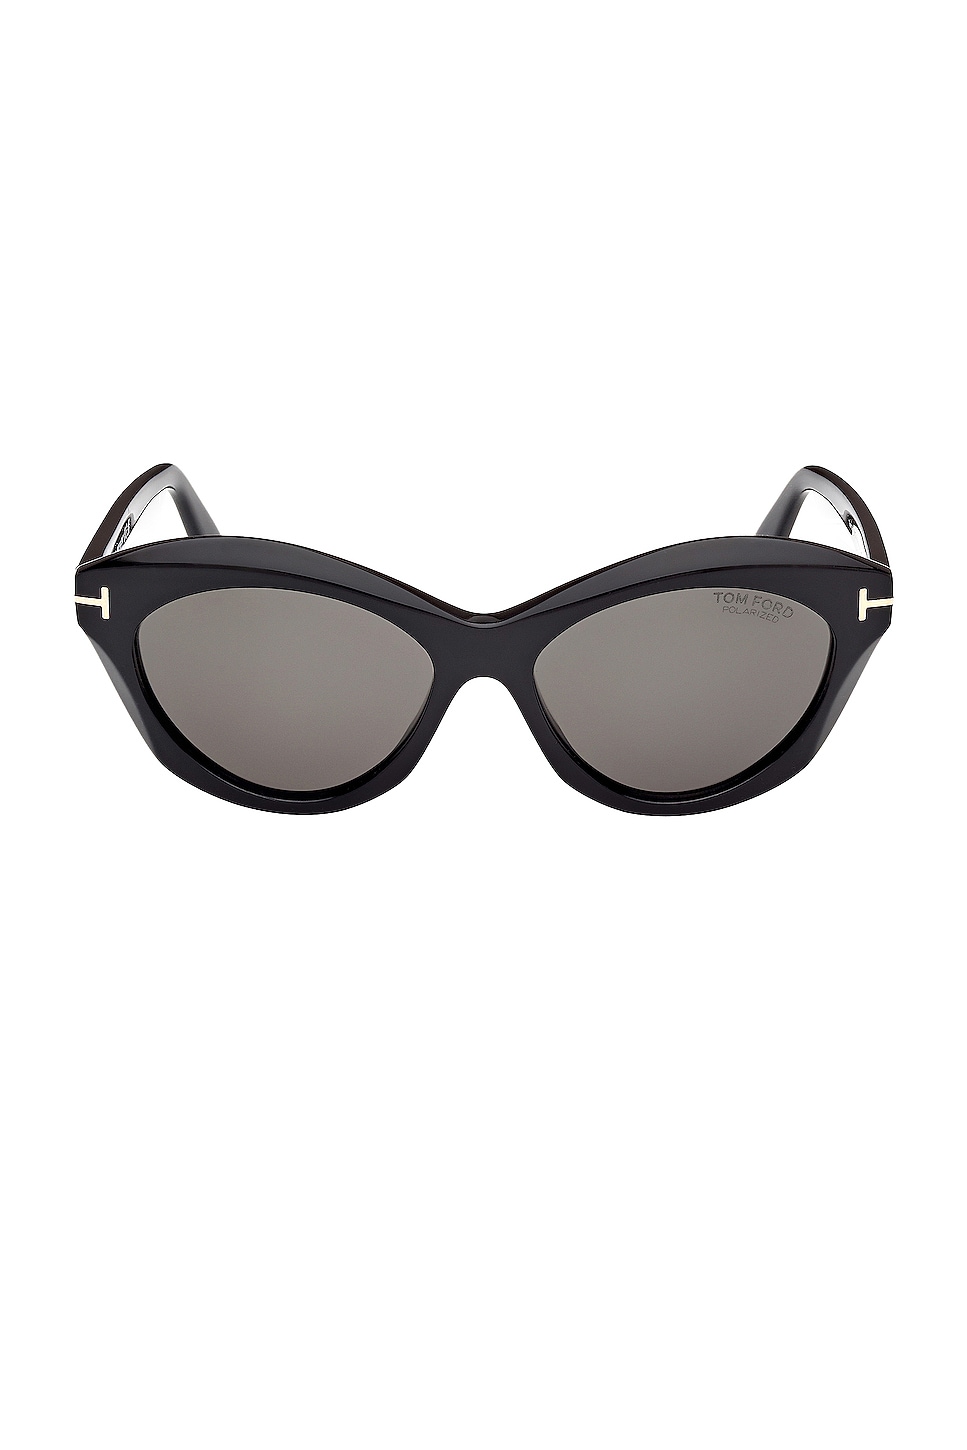 Toni Sunglasses in Black